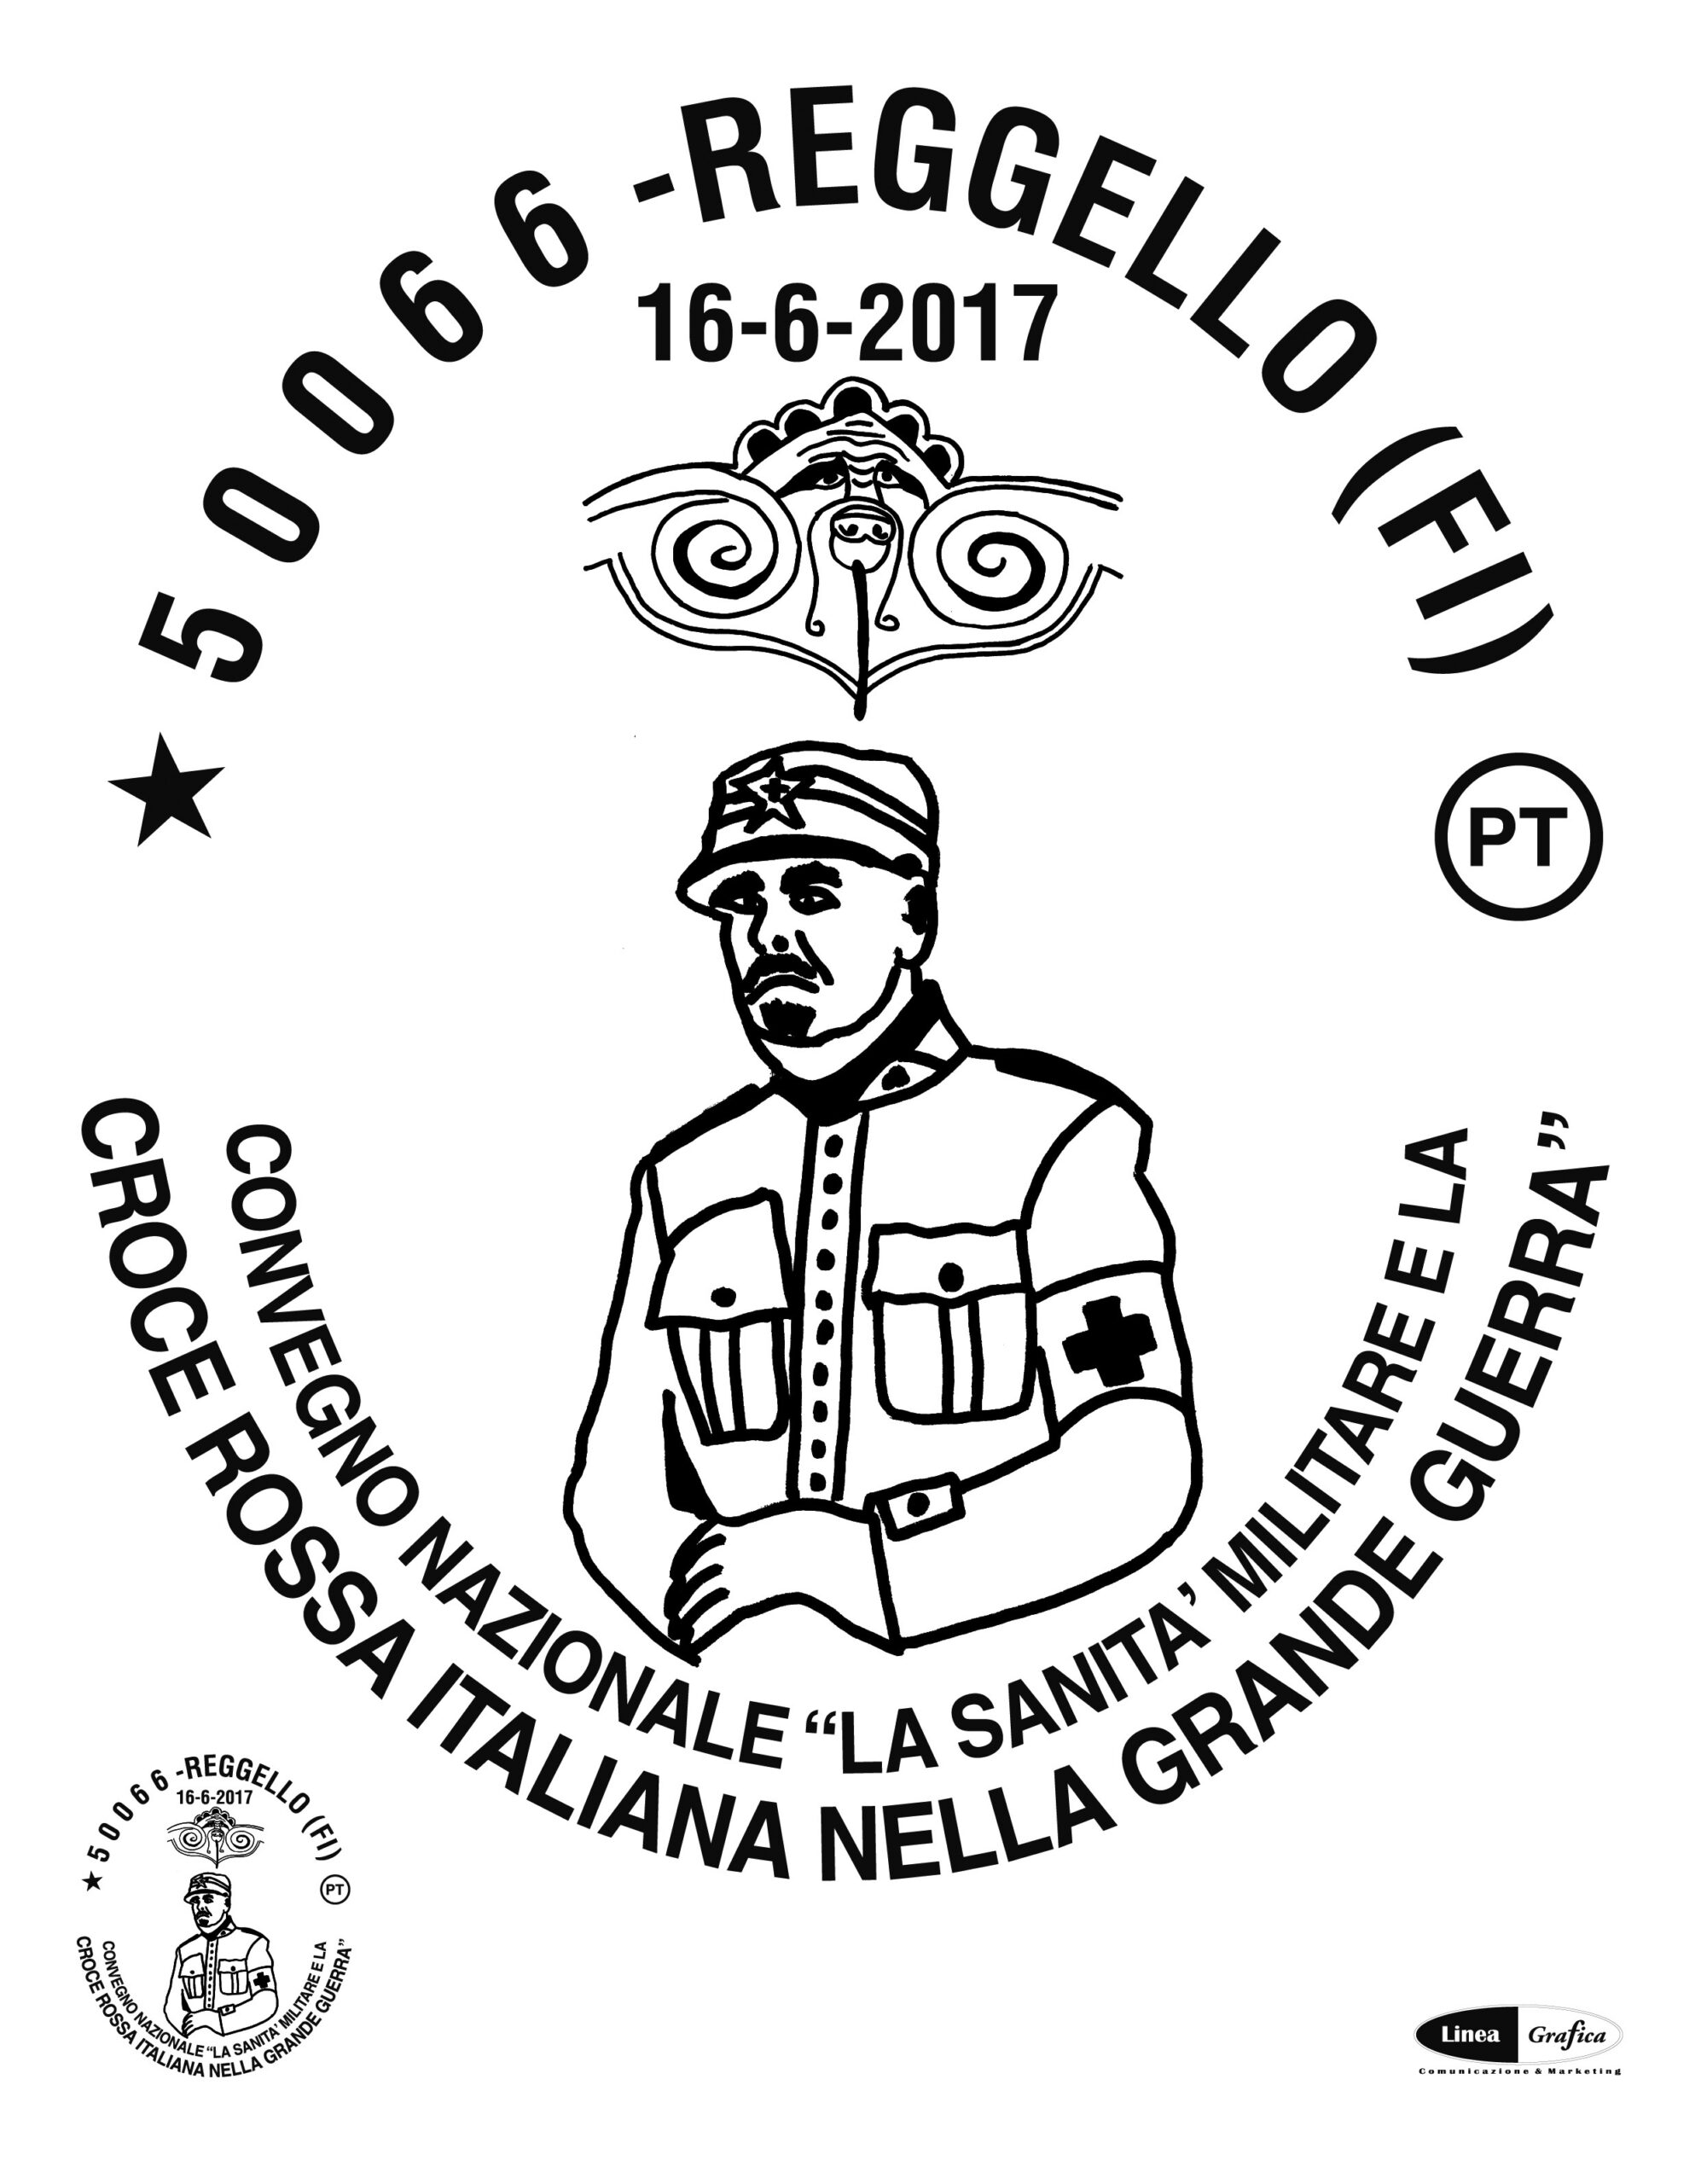 La Sanità Militare e la Croce Rossa Italiana nella Grande Guerra